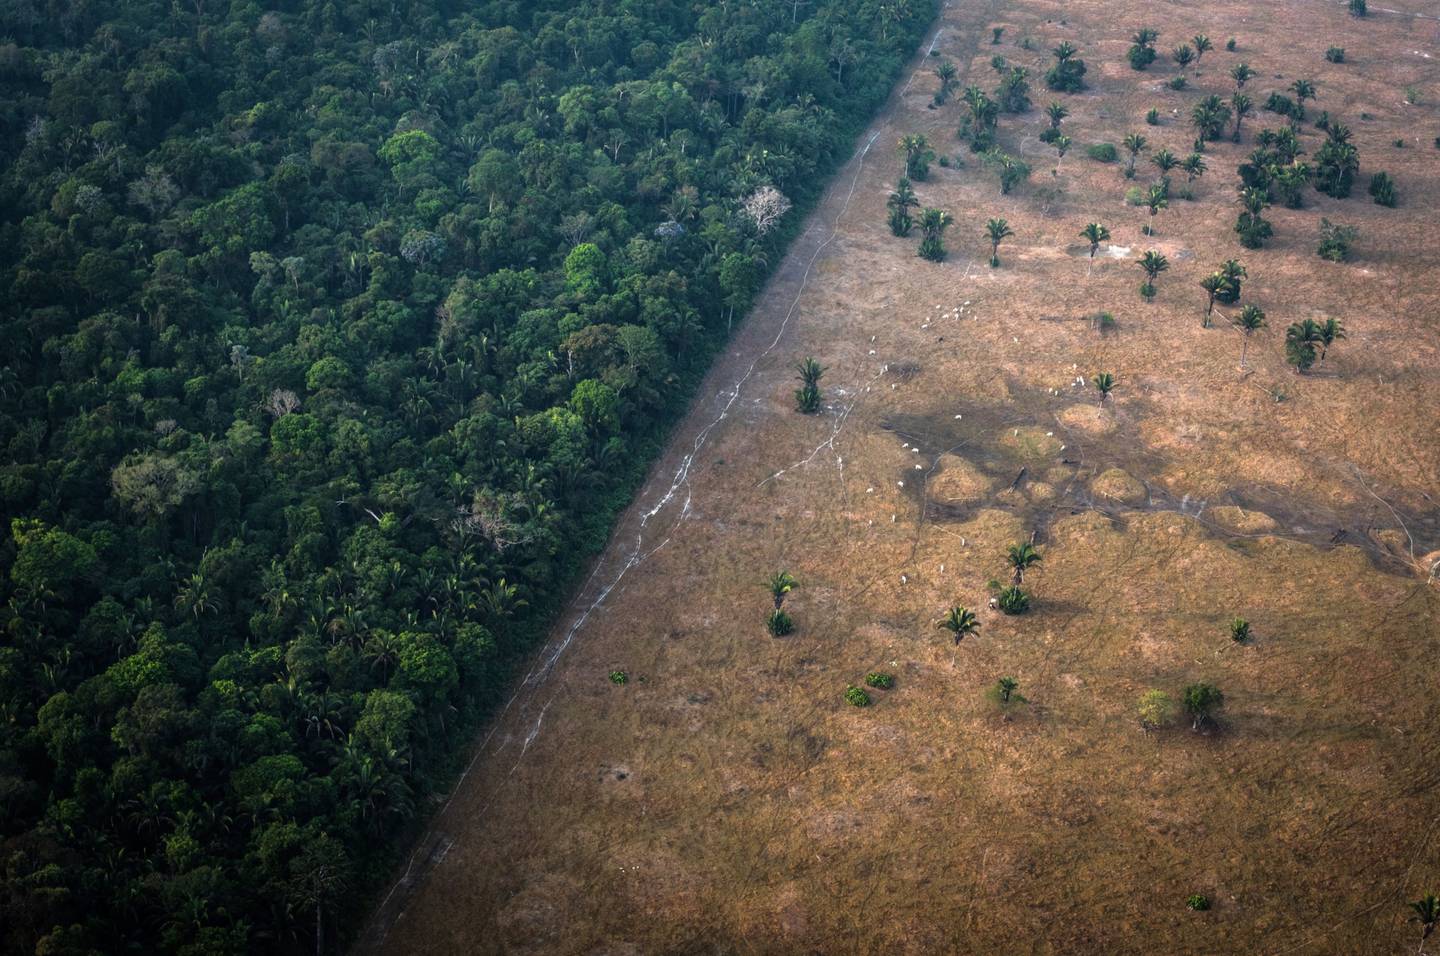 La vegetación sana se encuentra junto a un campo calcinado por el fuego en la selva amazónica del estado de Rondonia, Brasil. Fotógrafo: Leonardo Carrato/Bloombergdfd